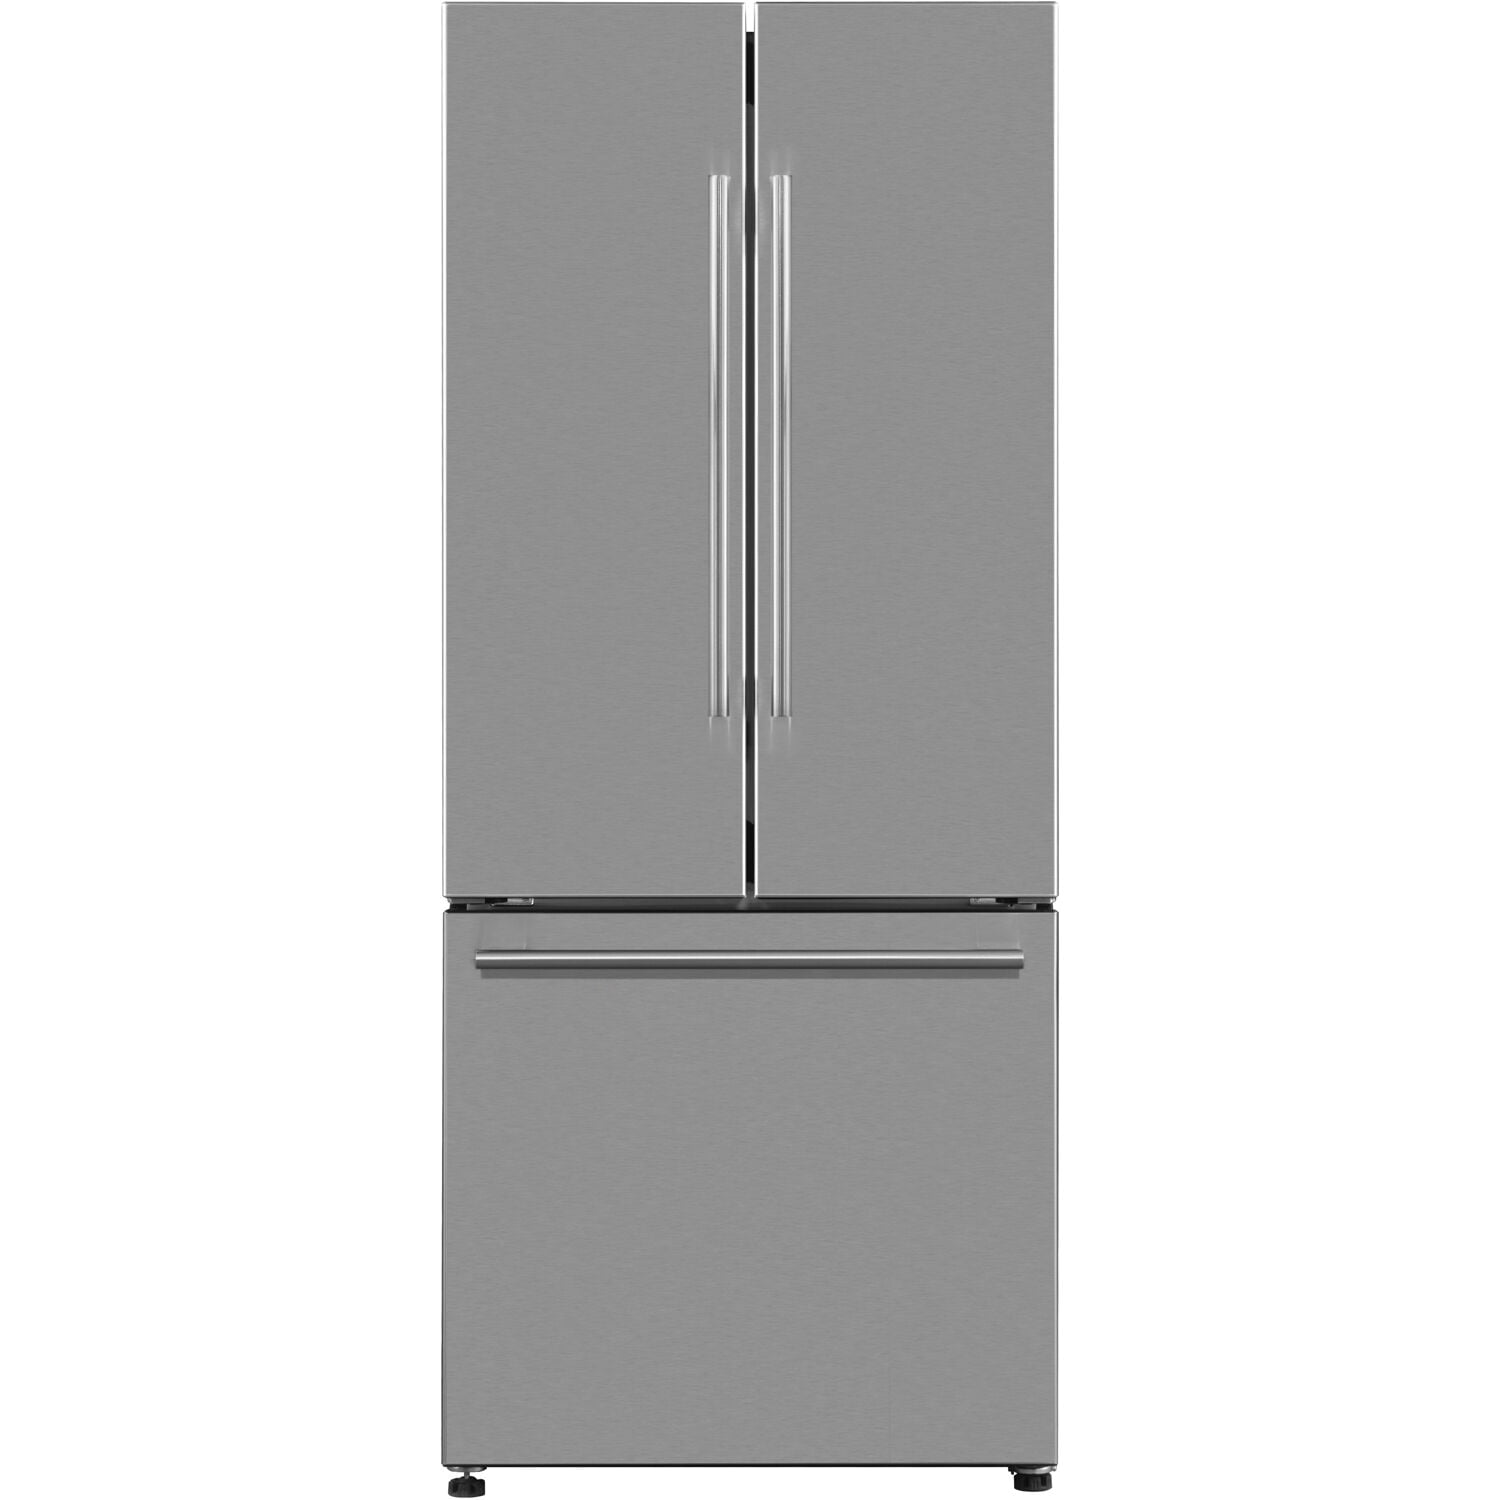 Galanz Refrigerator Model No. GLR16FS2N16